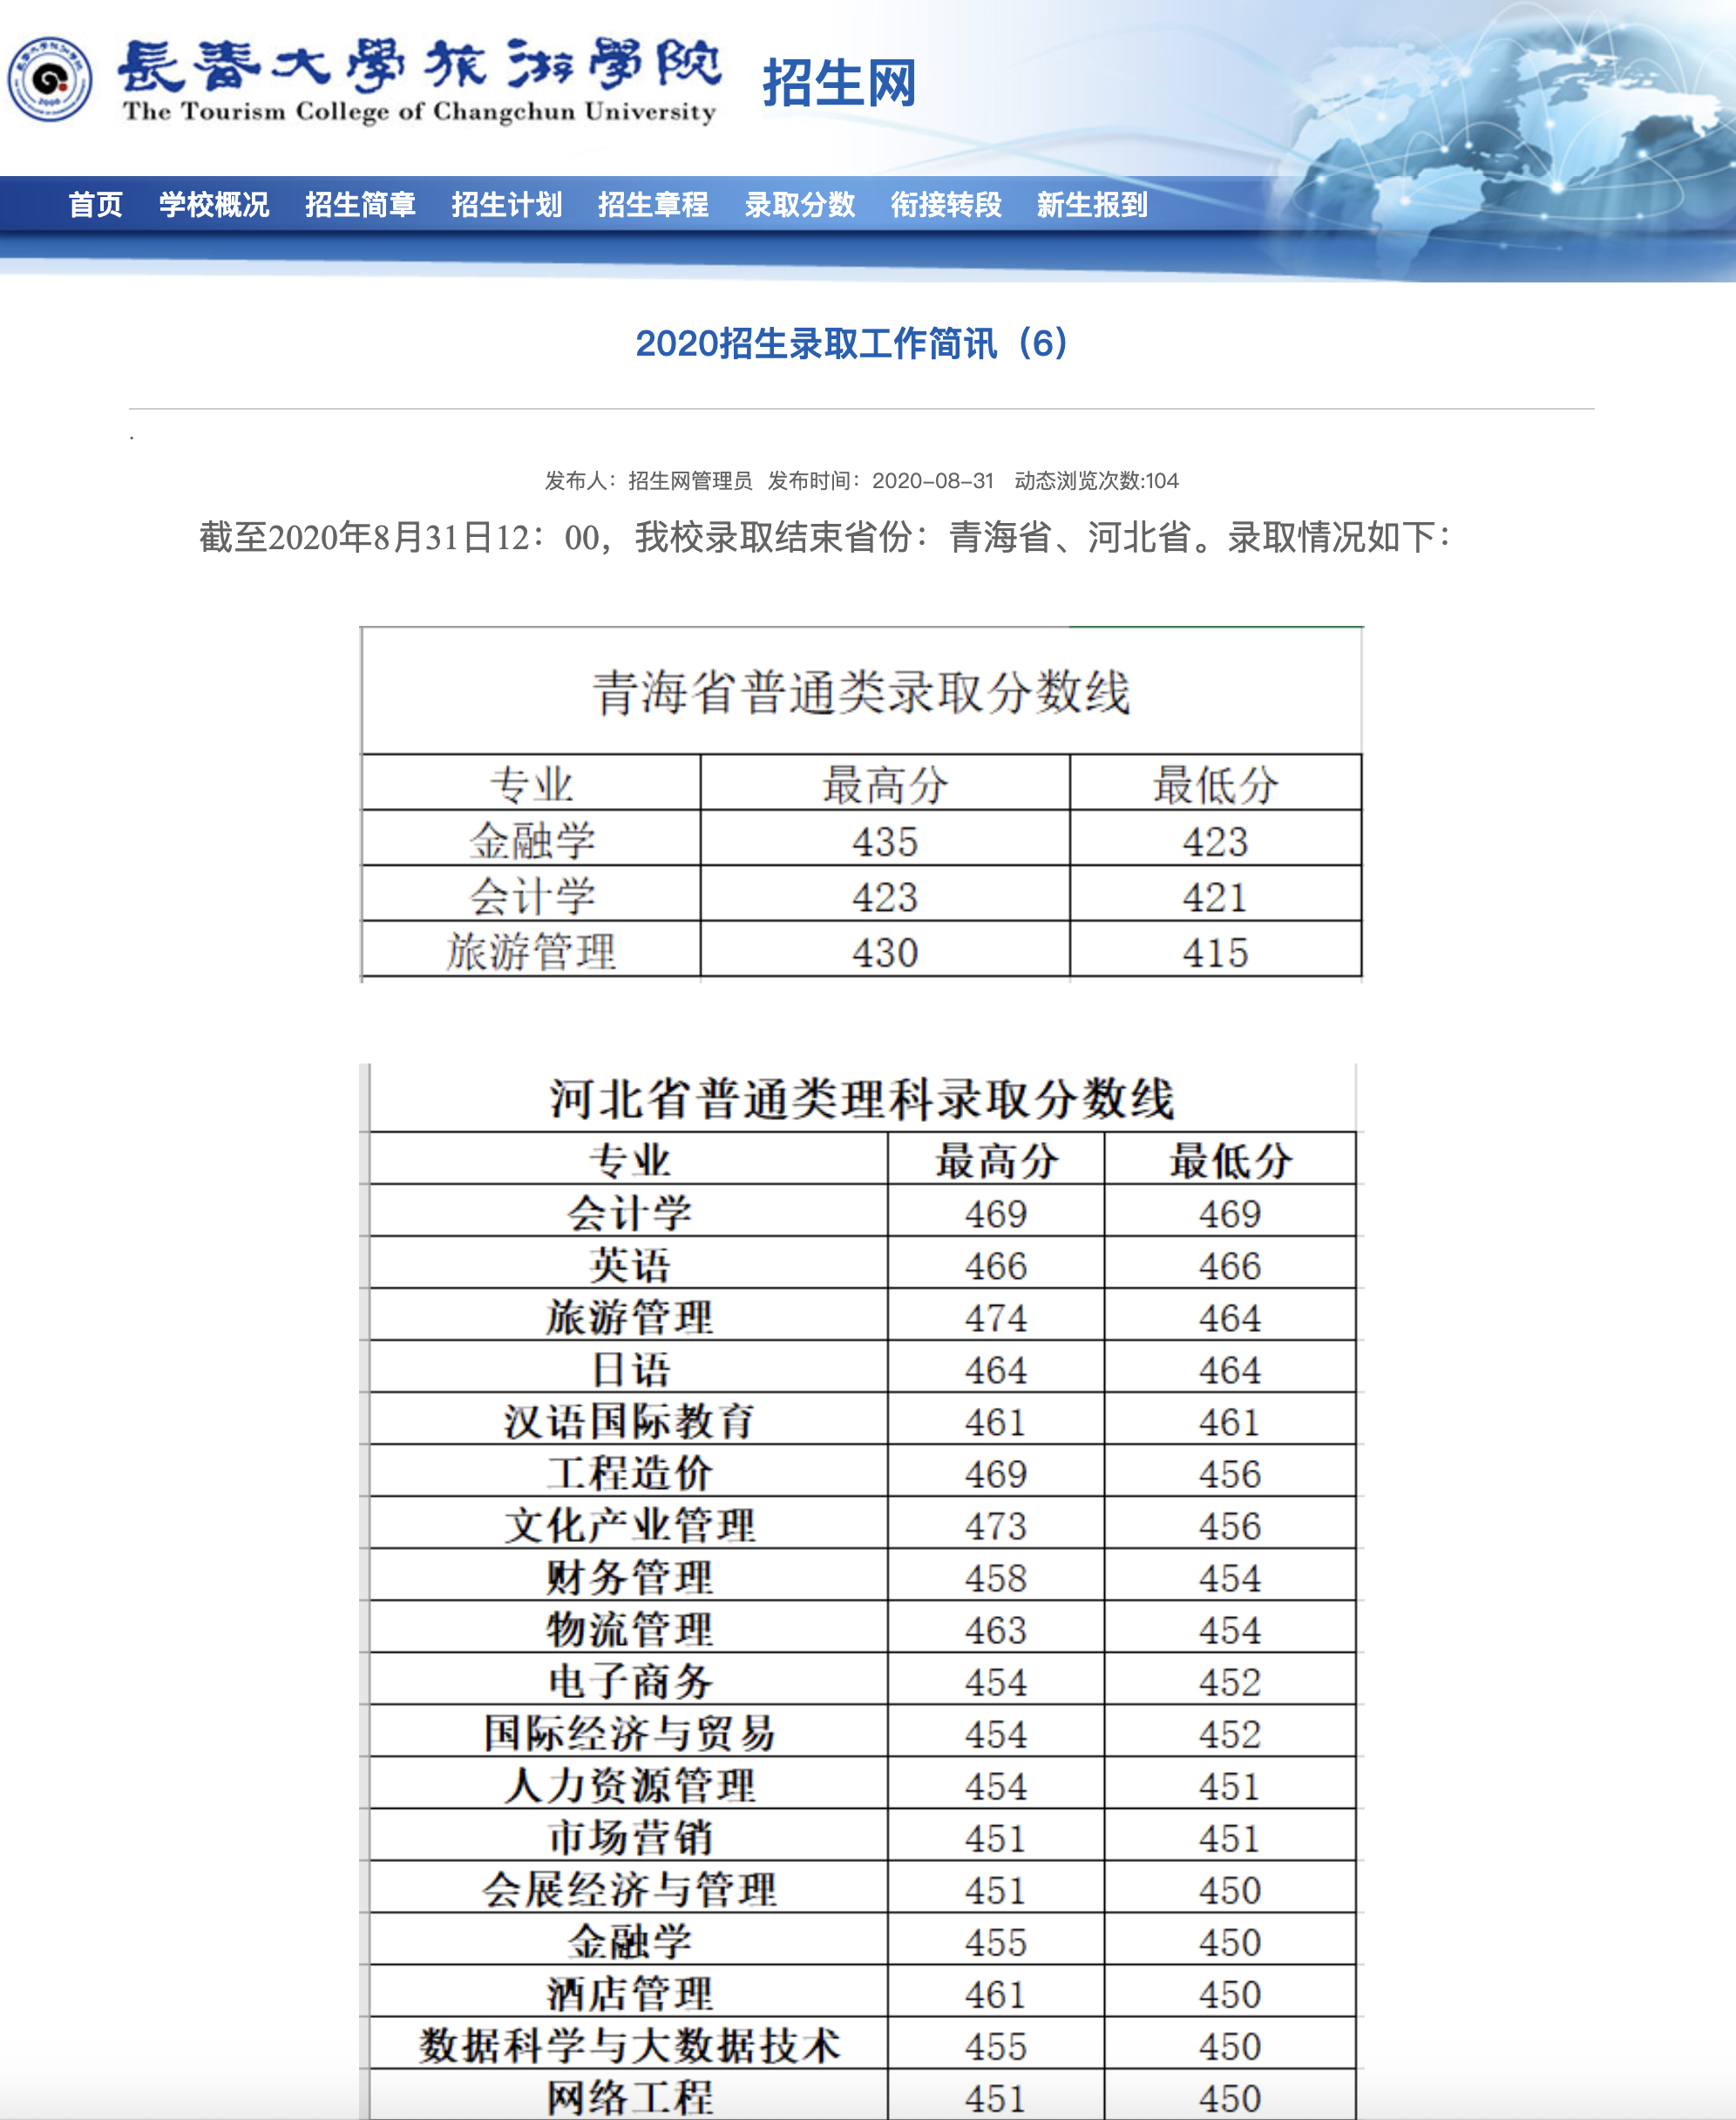 长春大学旅游学院2020高考青海省、河北省录取分数情况